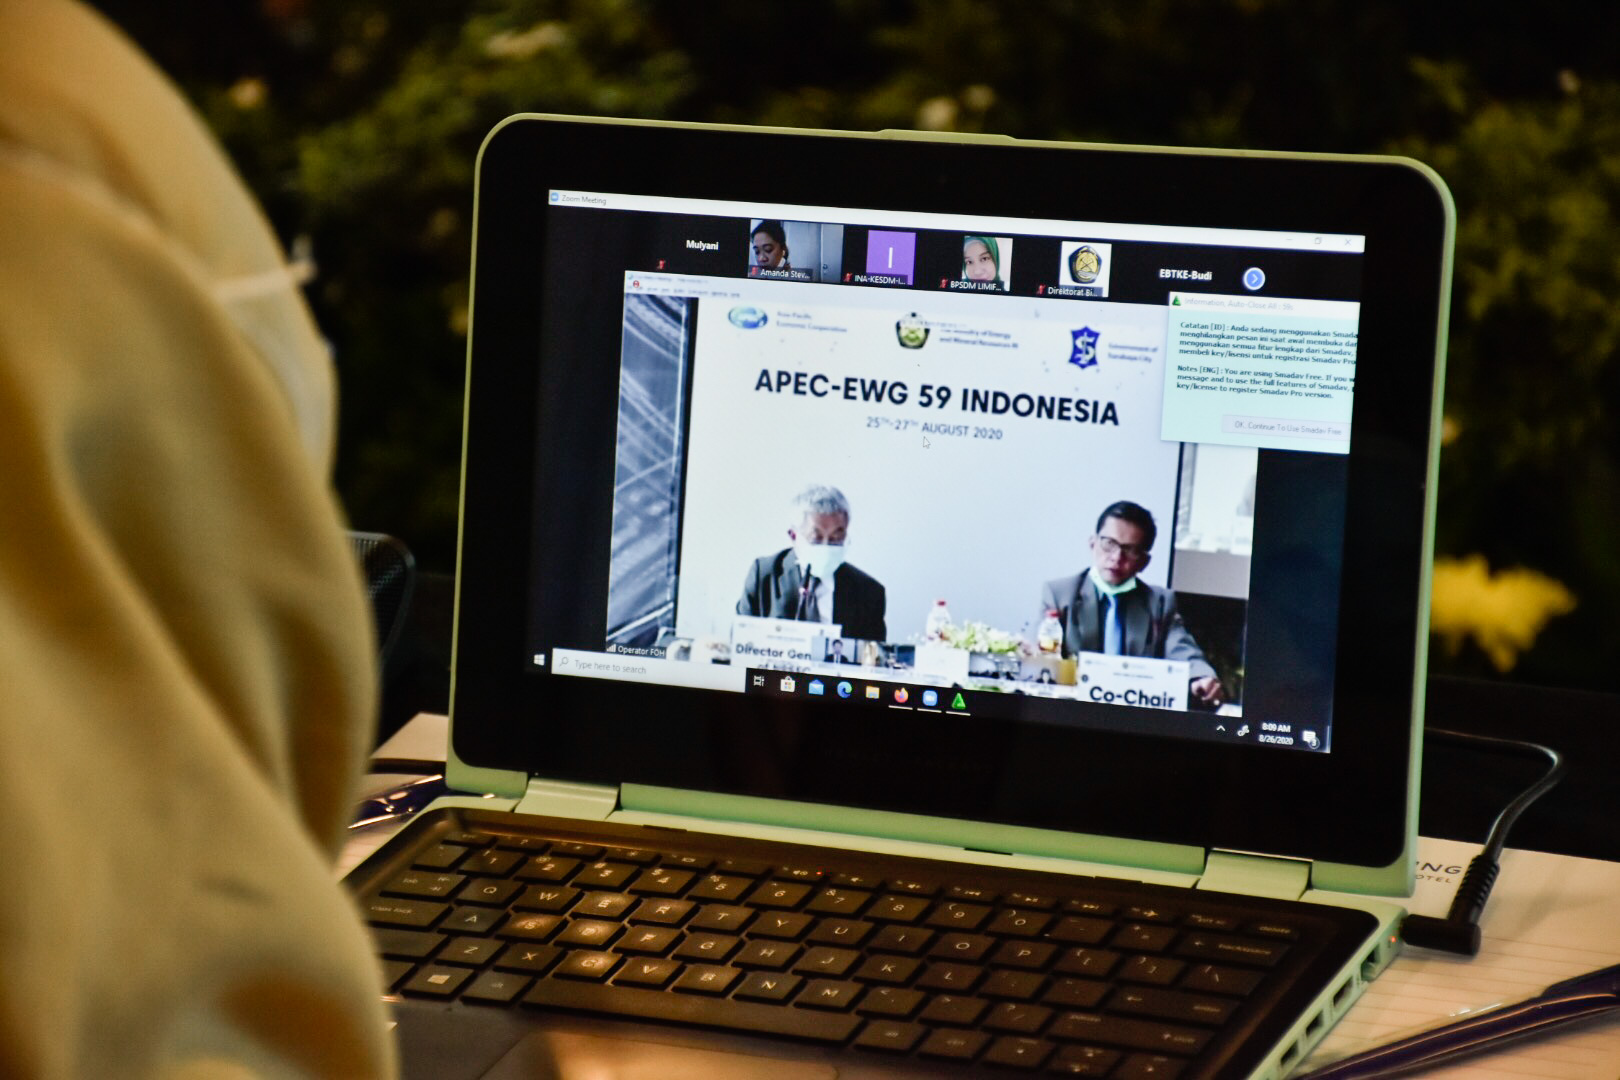 Salah satu peserta yang menyaksikan pembukaan APEC EWG-59 Indonesia secara virtual melalui aplikasi zoom di Tangerang, Banten. (26/08/2020)